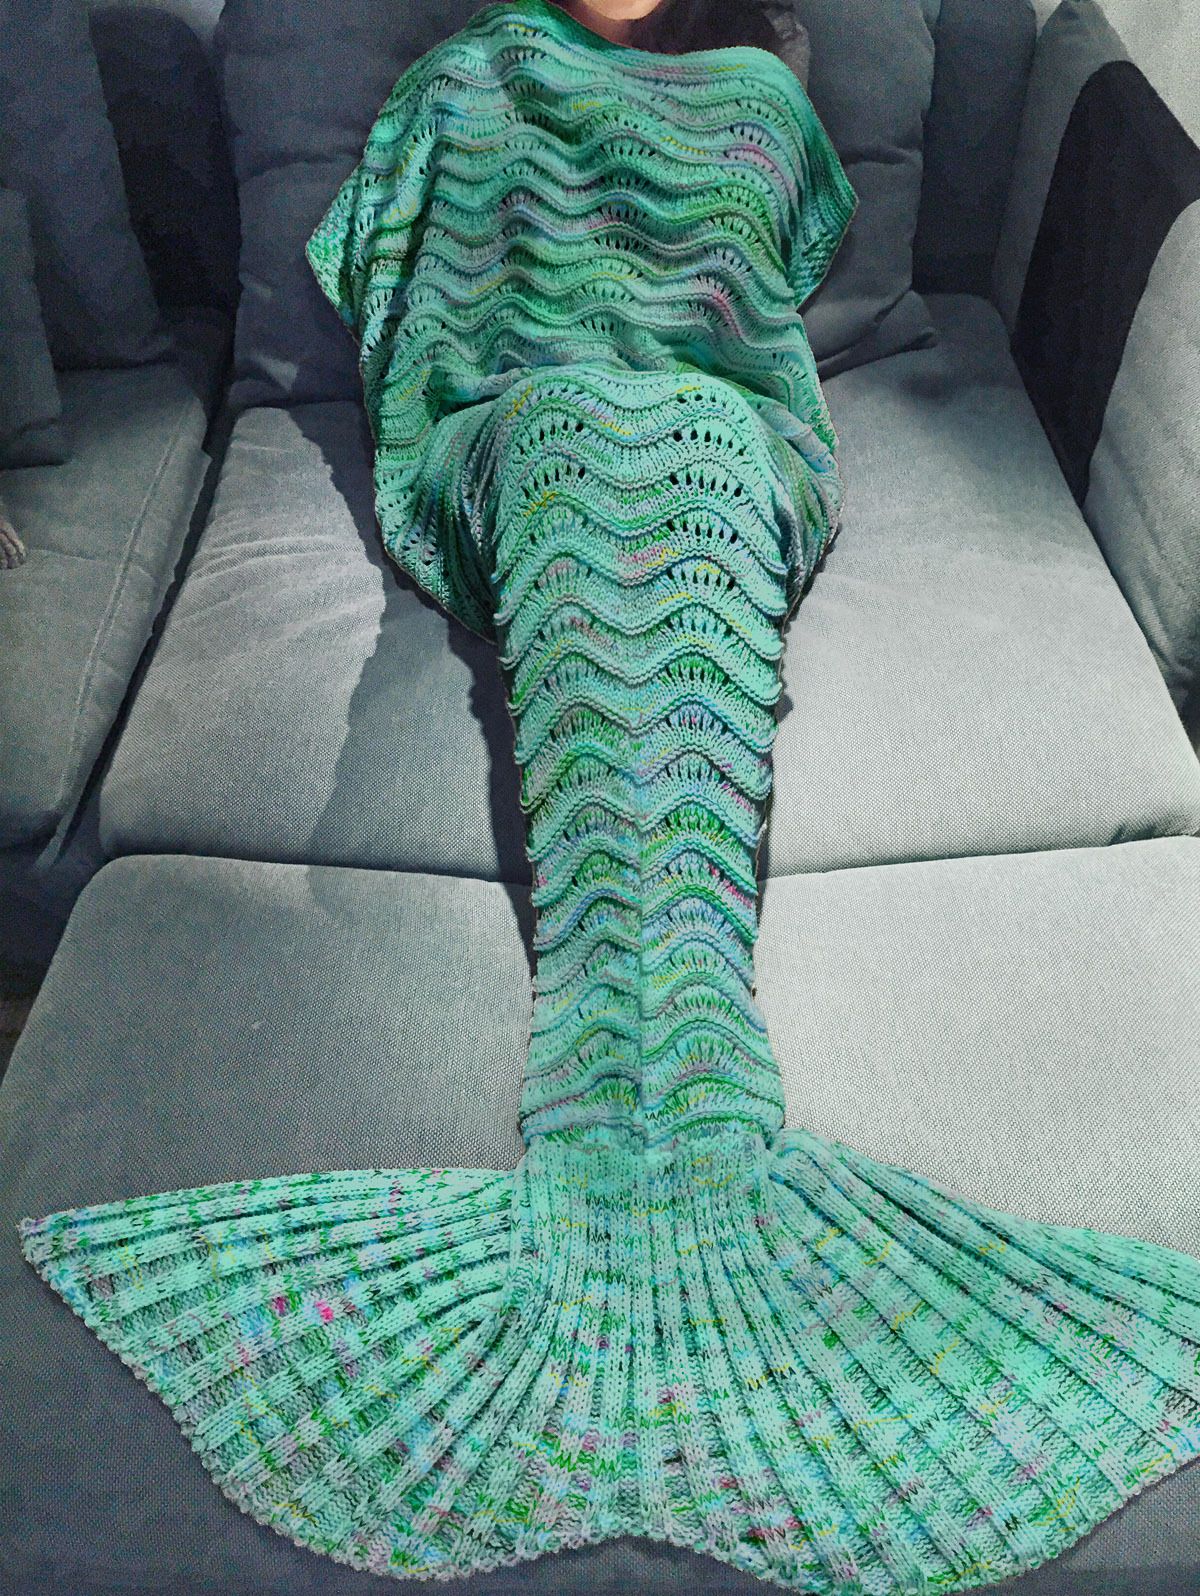 Hot Sell Mermaid Tail Blanket Handmade Crochet Mermaid Blanket